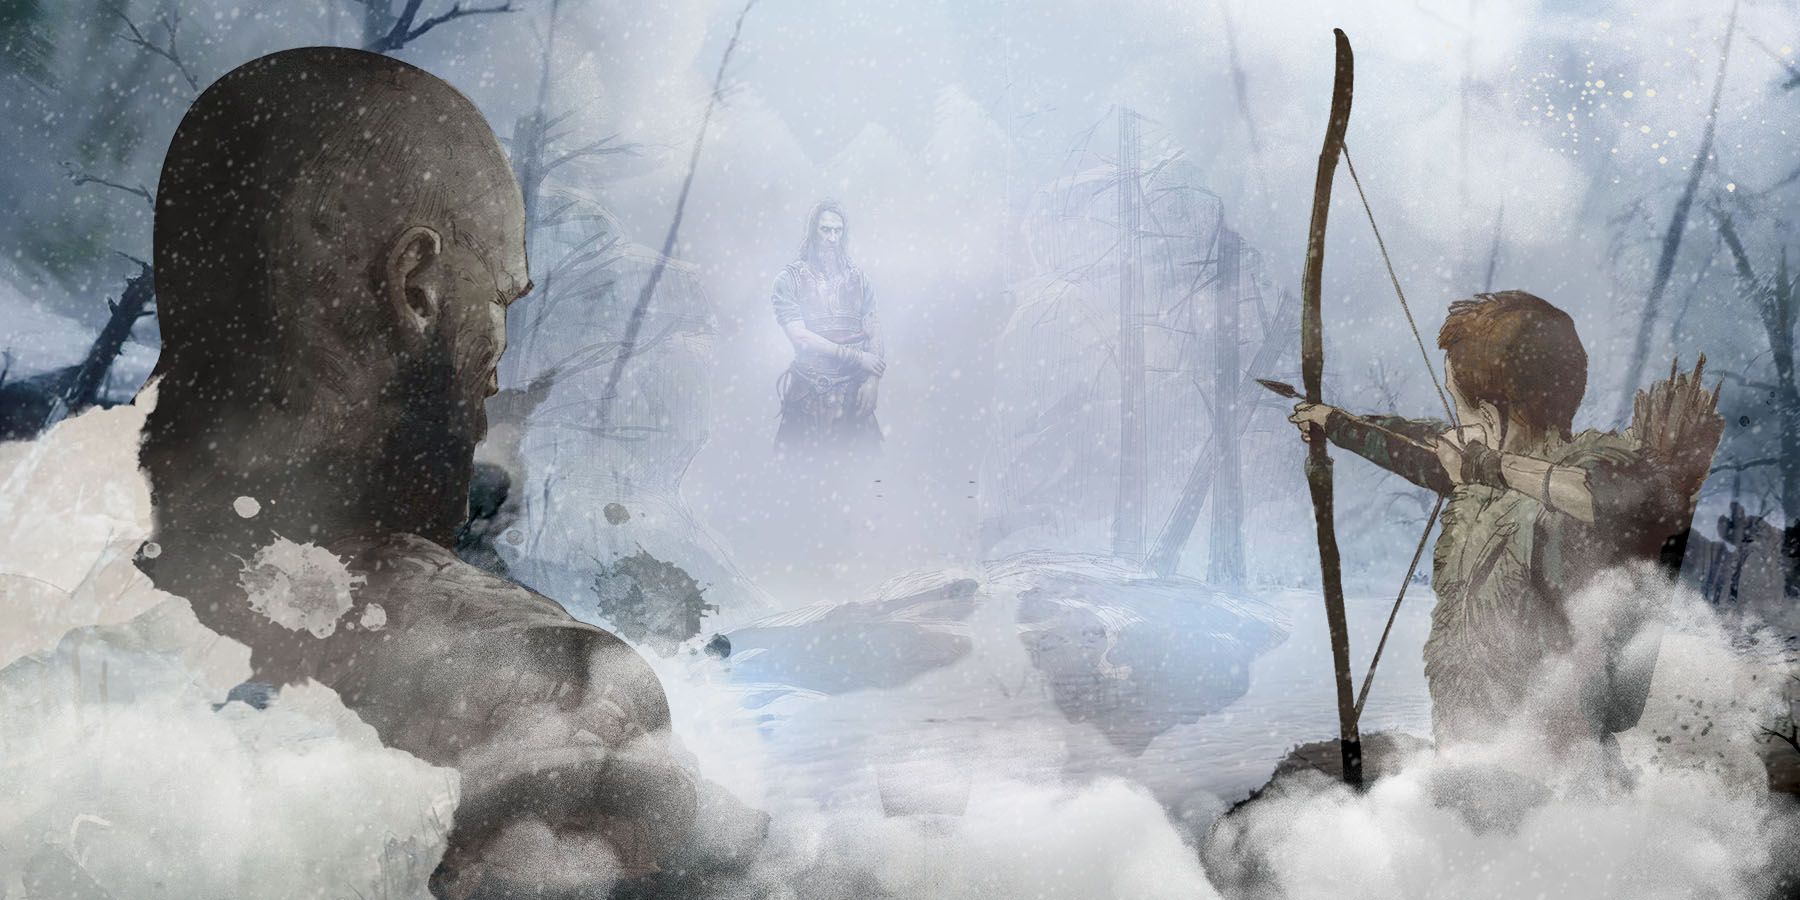 God of War Ragnarok preload time and release date